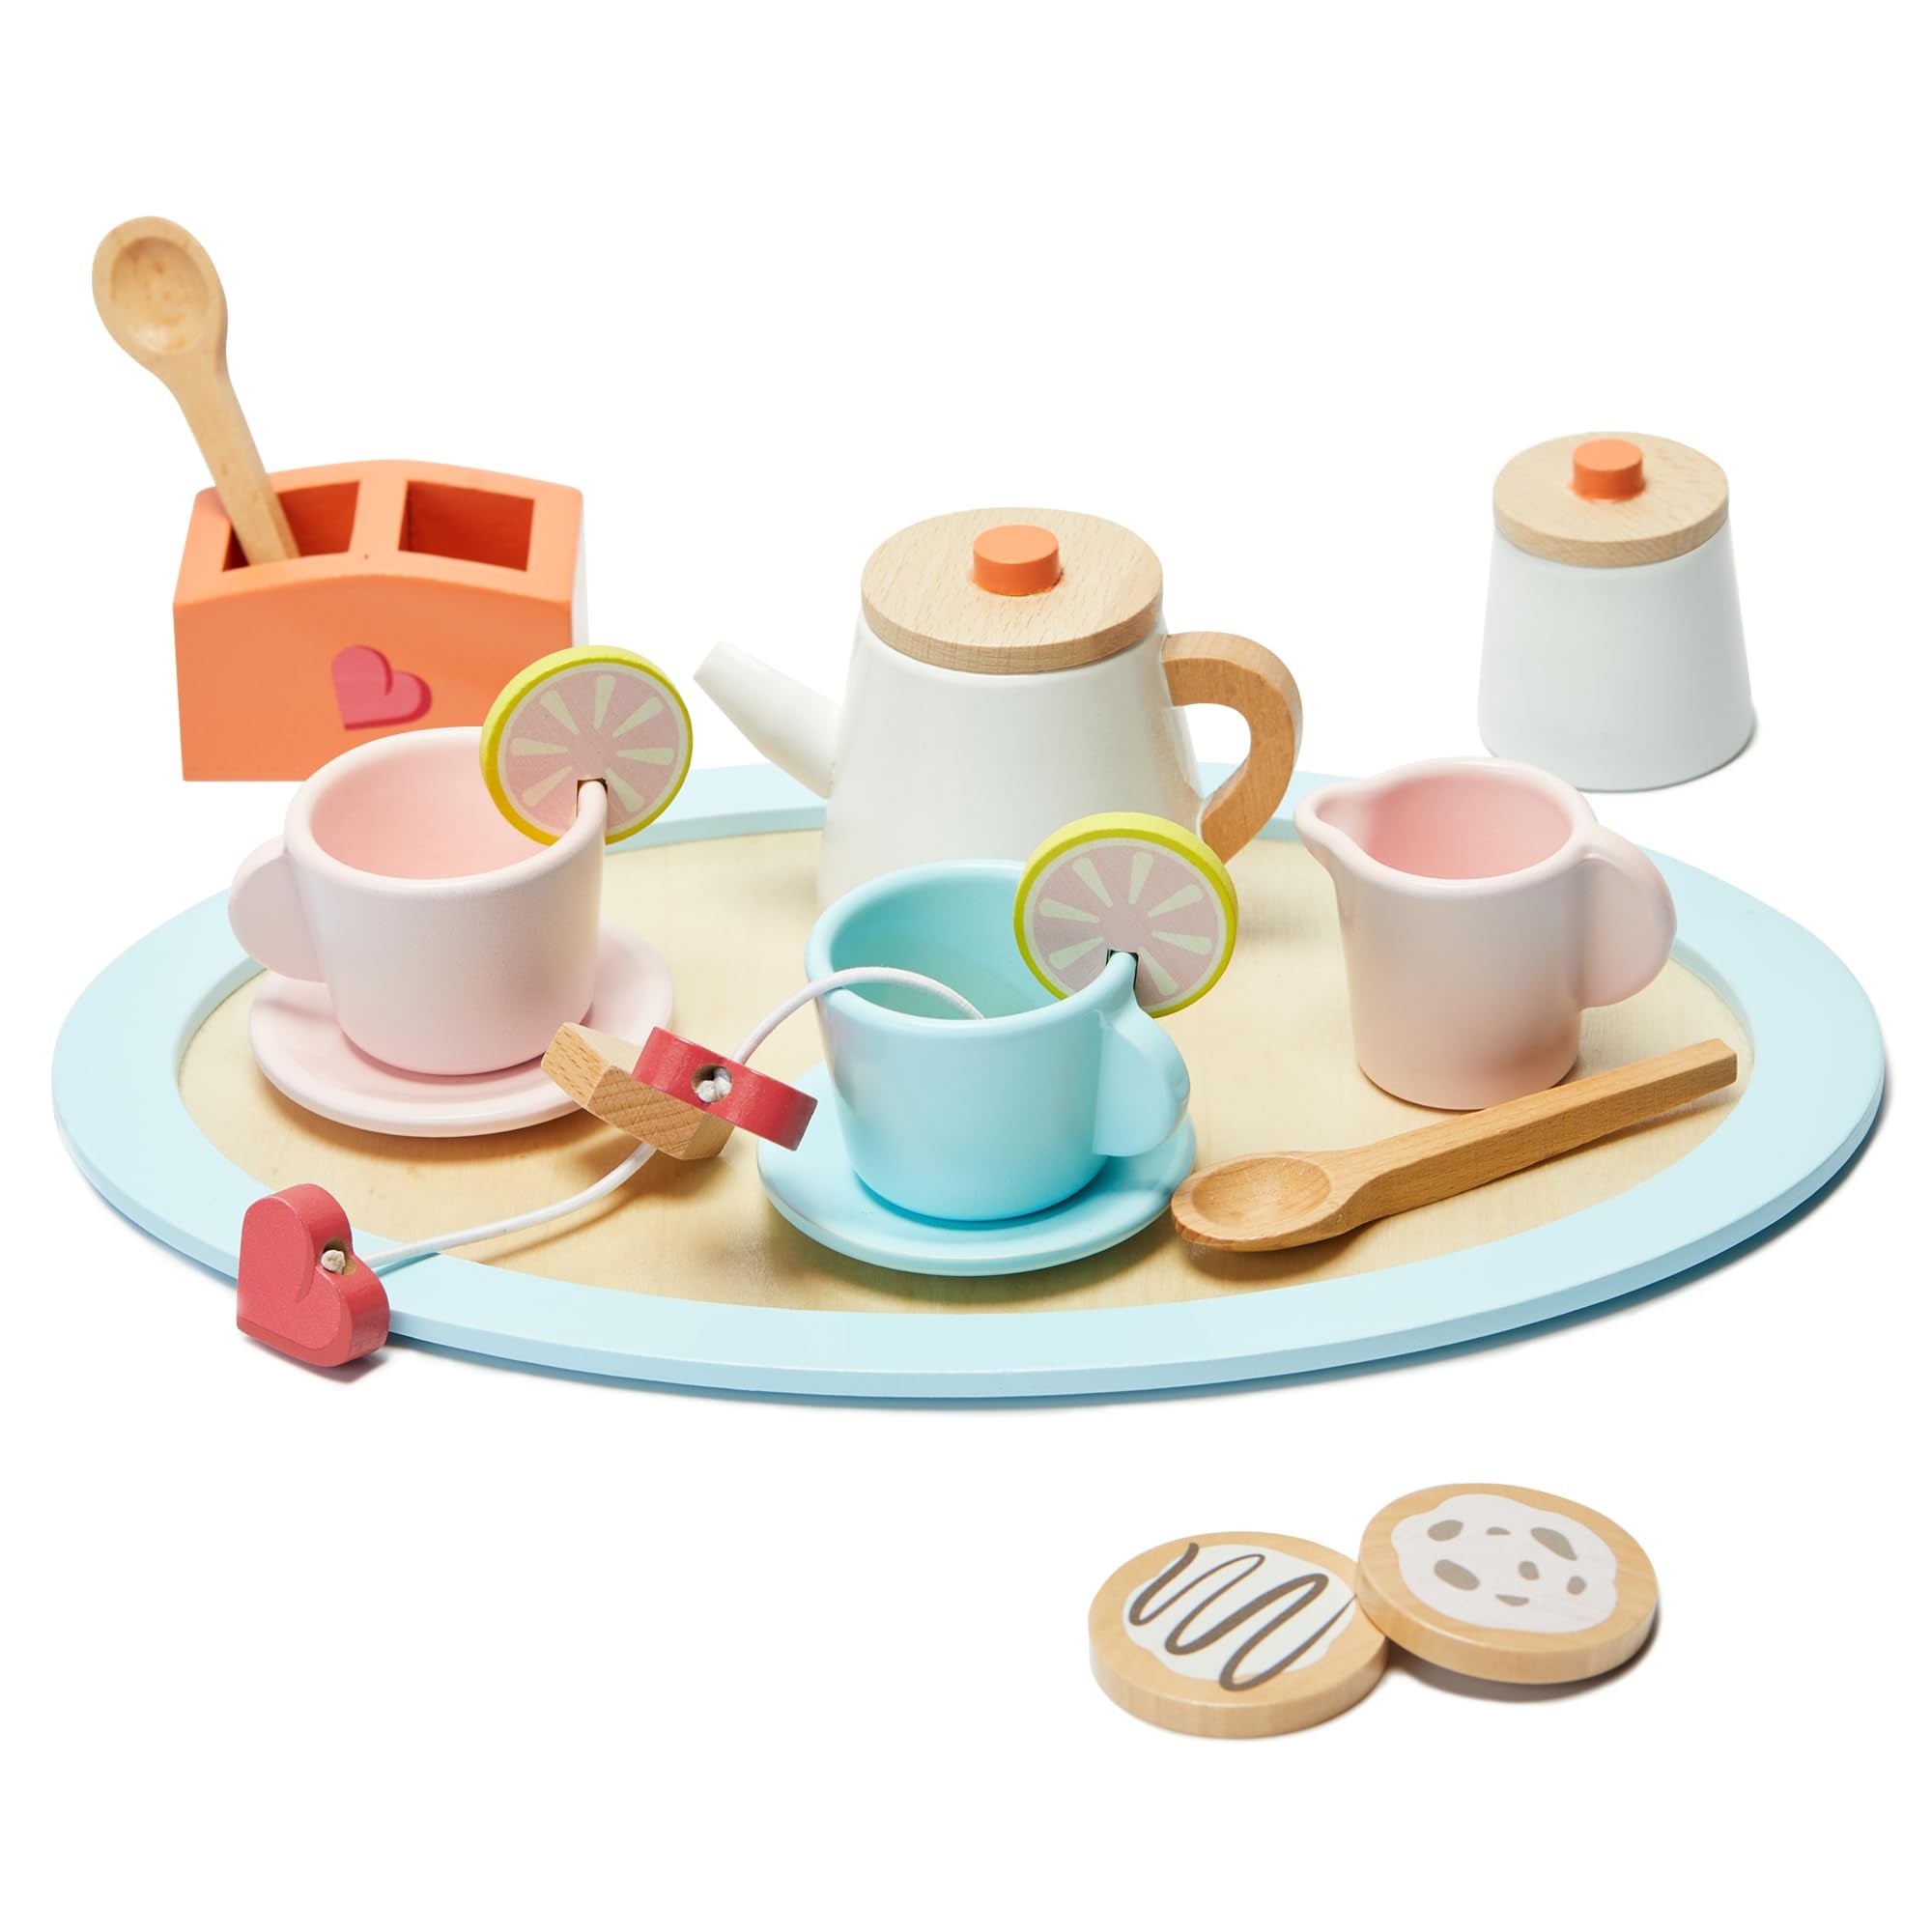 Juego de té de madera para niñas - Accesorios de cocina de juego